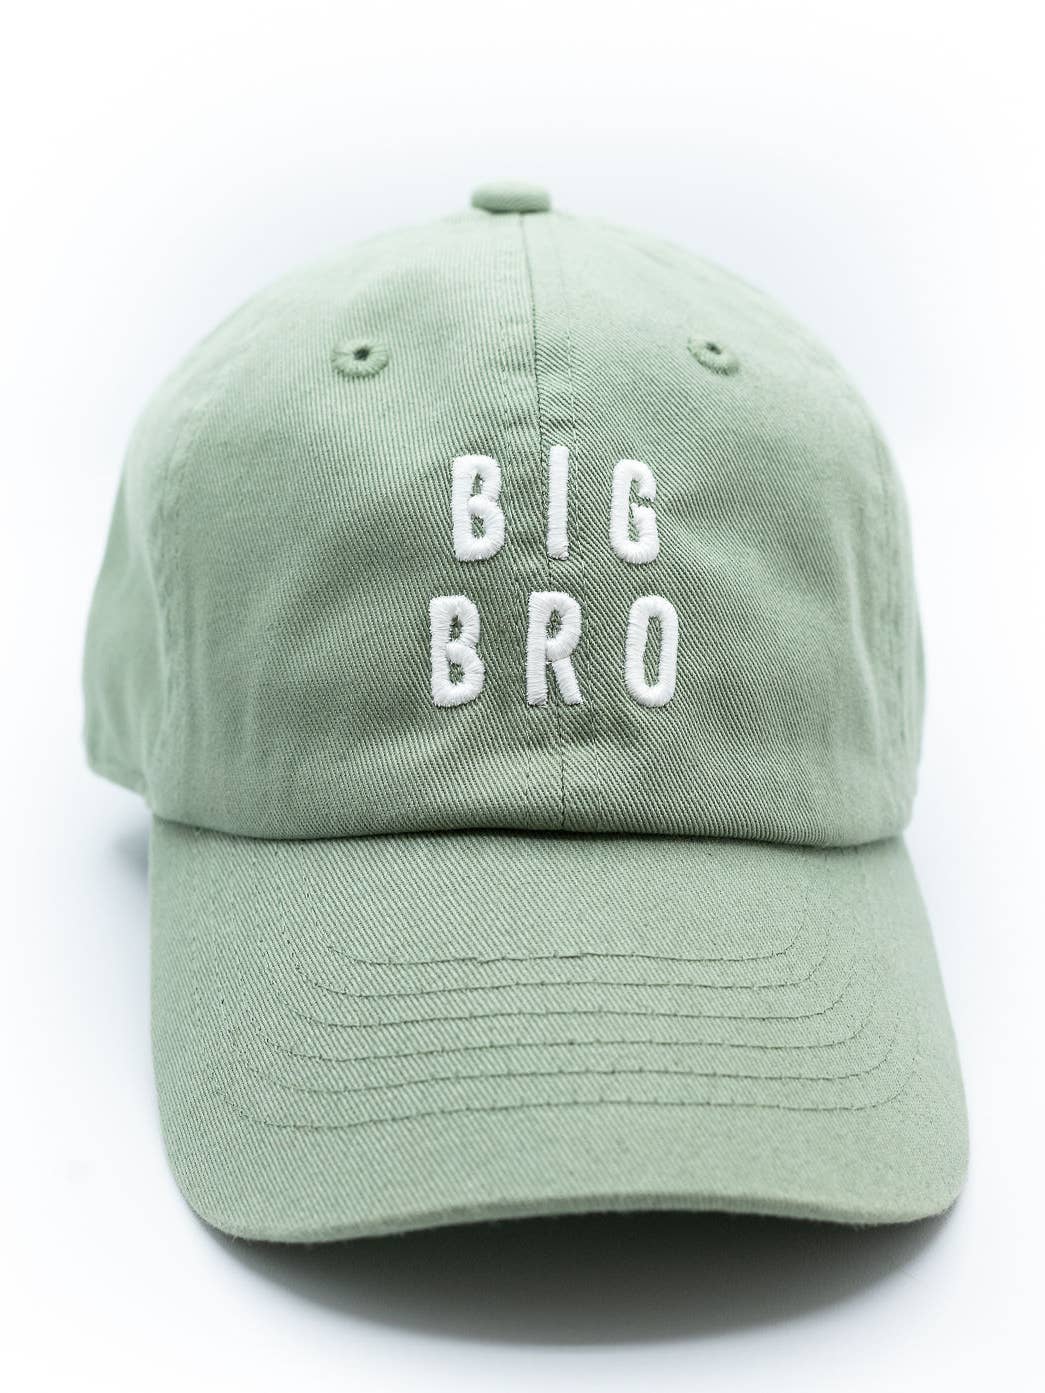 Dusty Sage Big Bro Hat